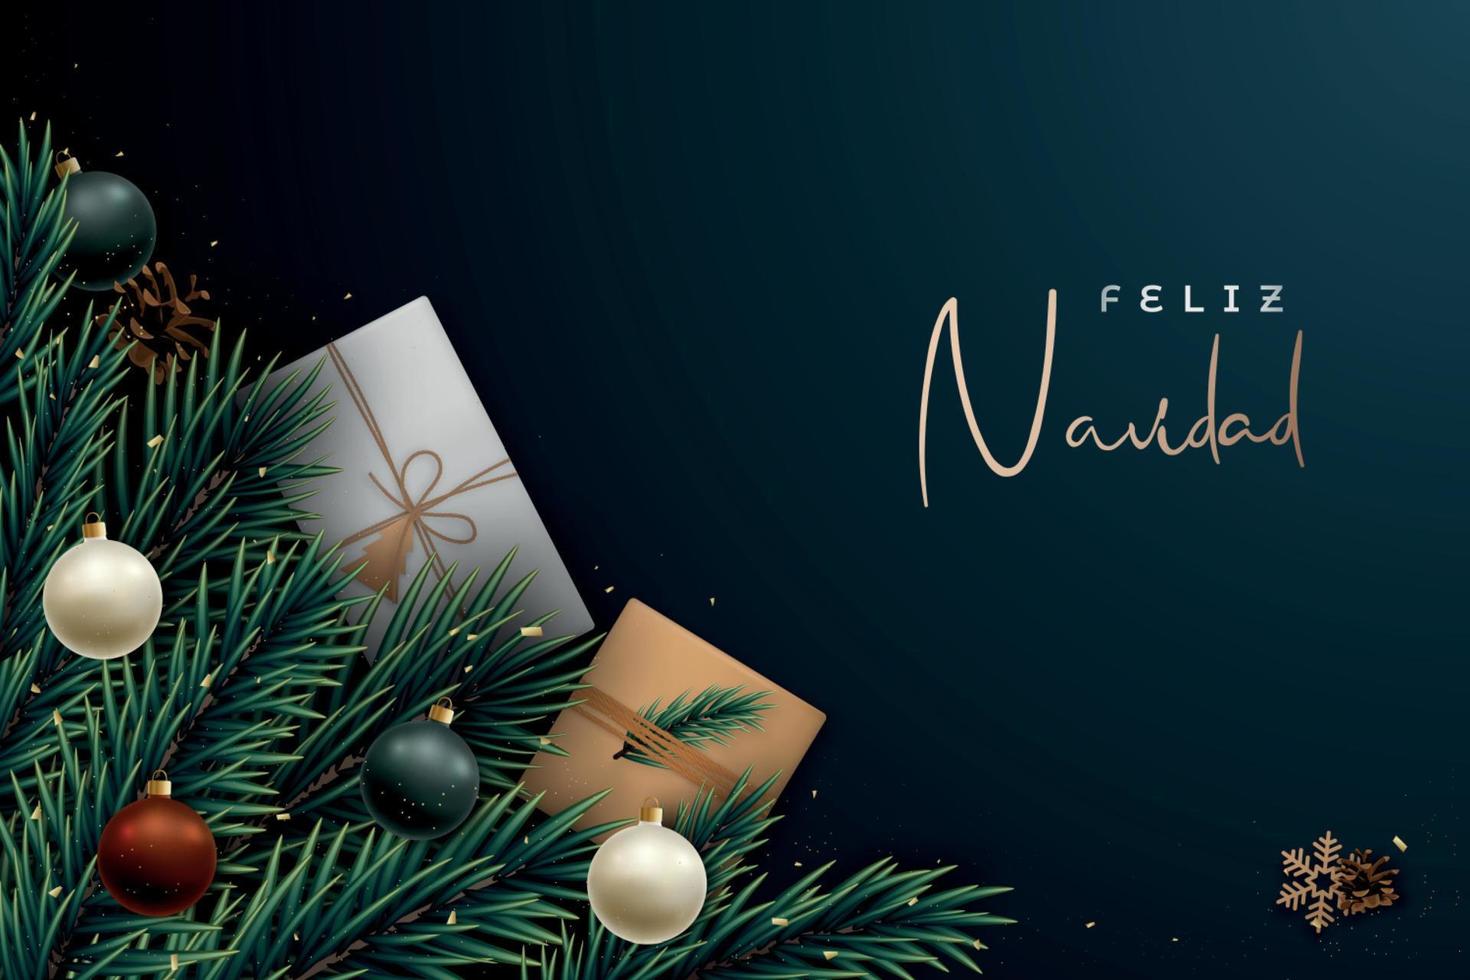 feliz navidad festliches banner, frohe weihnachten auf spanisch. vektor